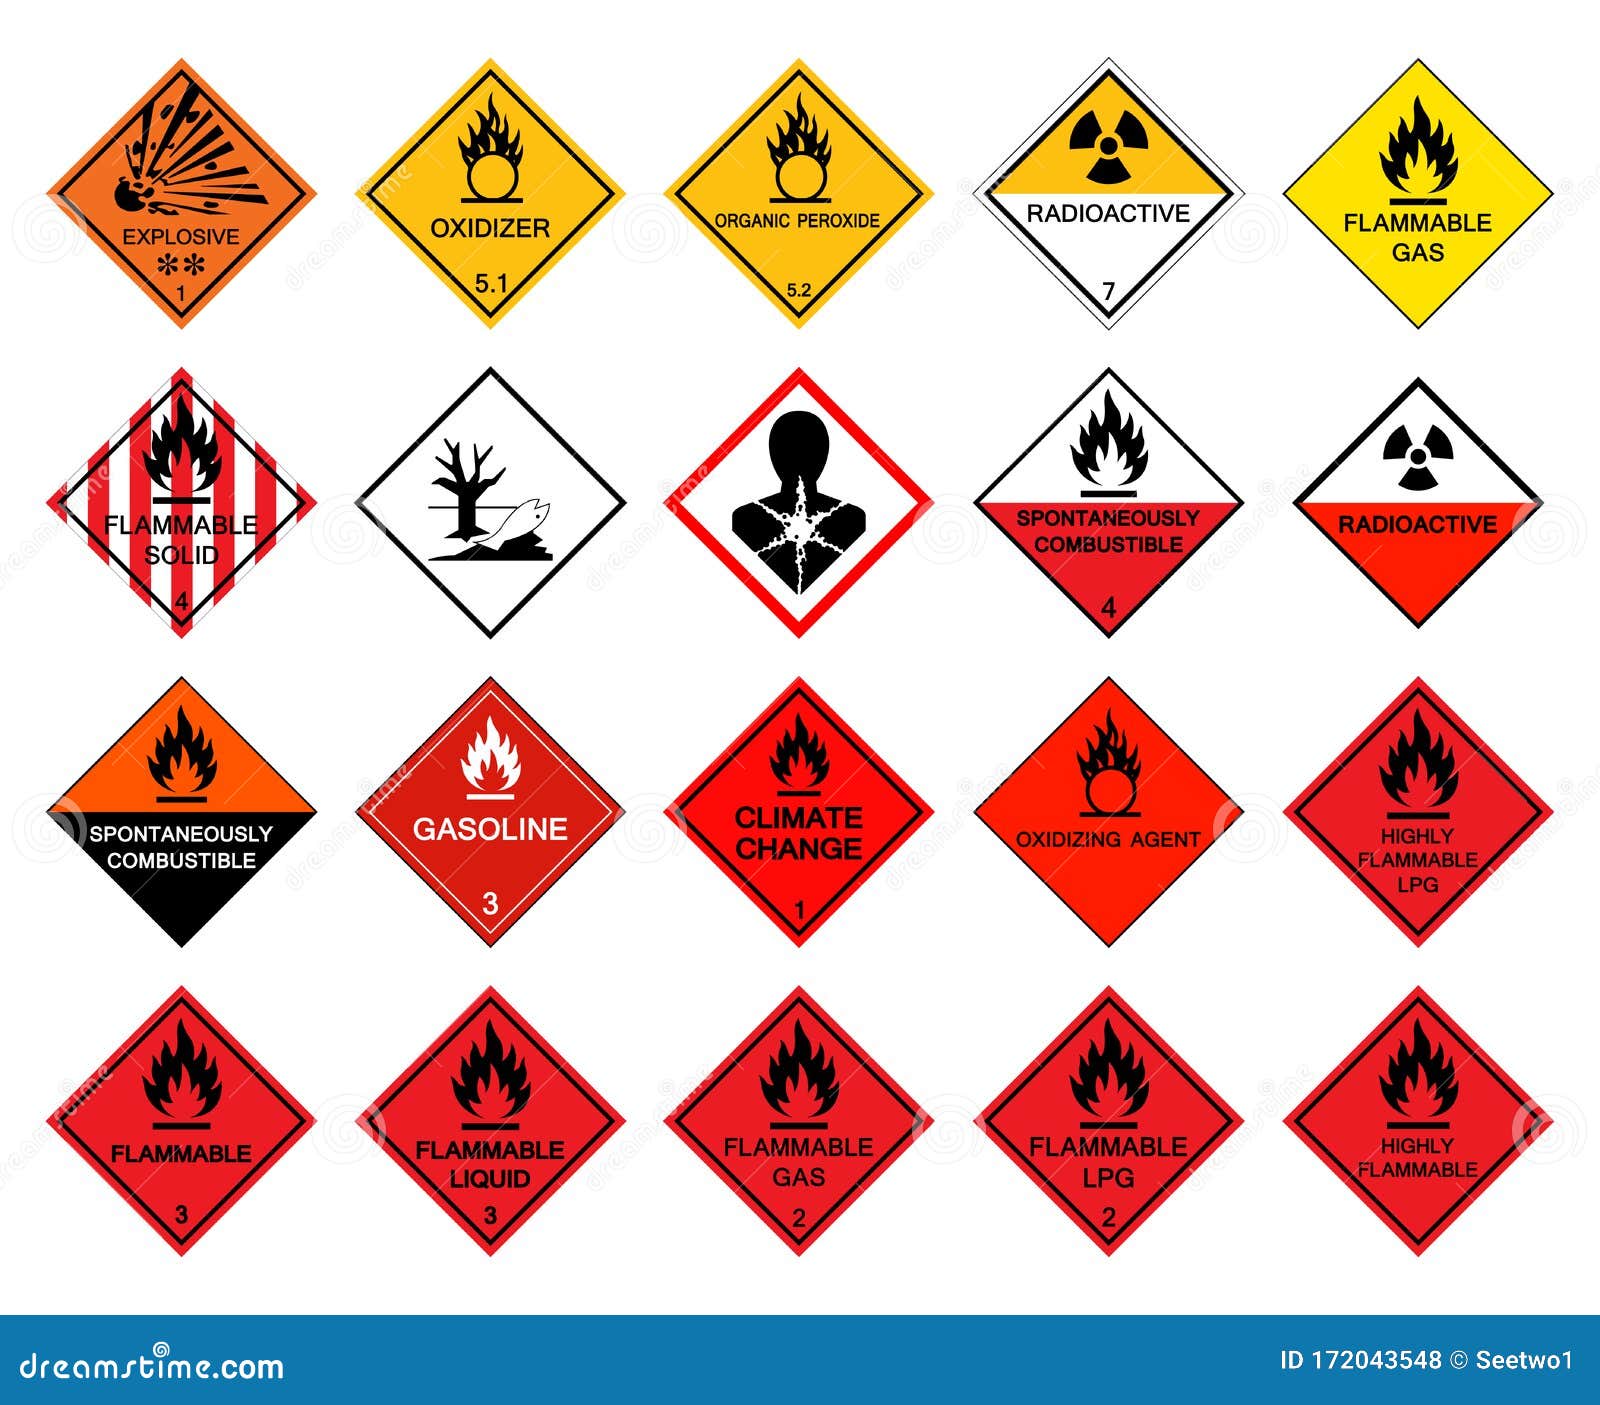 Hazardous Materials Symbols Clip Art